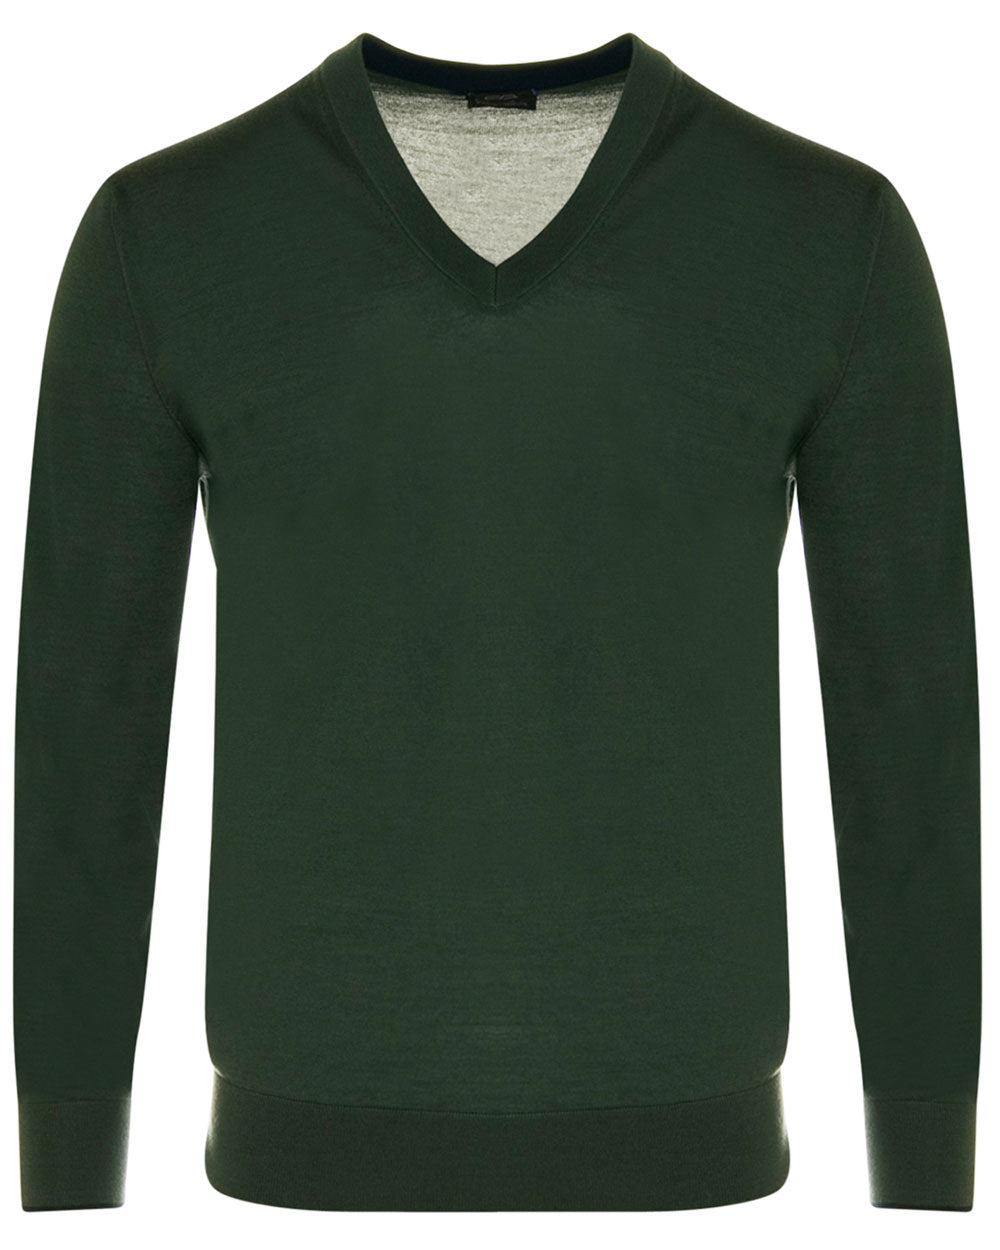 Olive Cashmere V-Neck Sweater